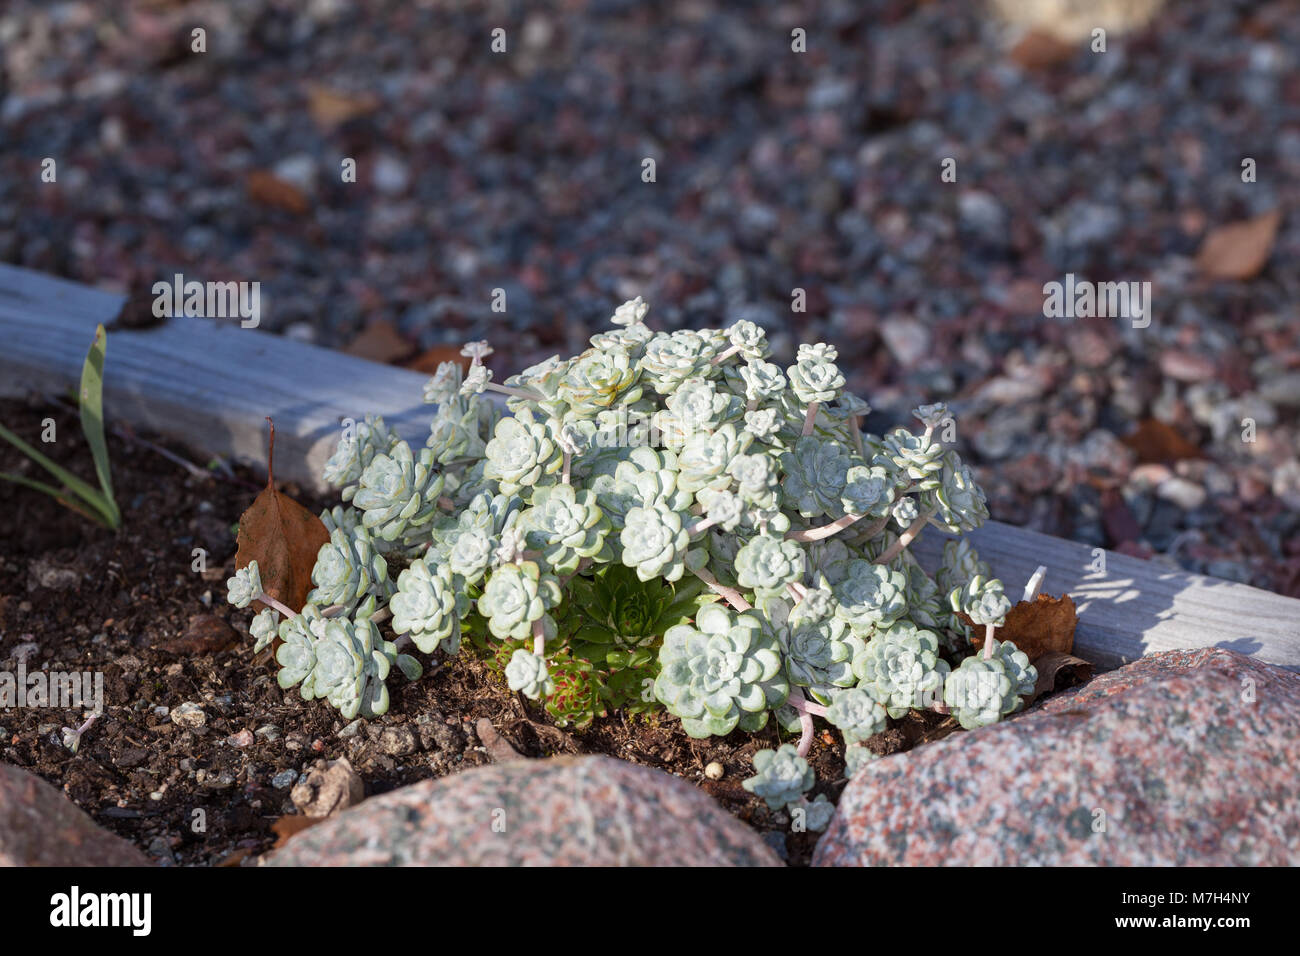 'Cape Blanco' Broadleaf Stonecrop, Kalifornisk fetknopp (Sedum spathulifolium) Stock Photo